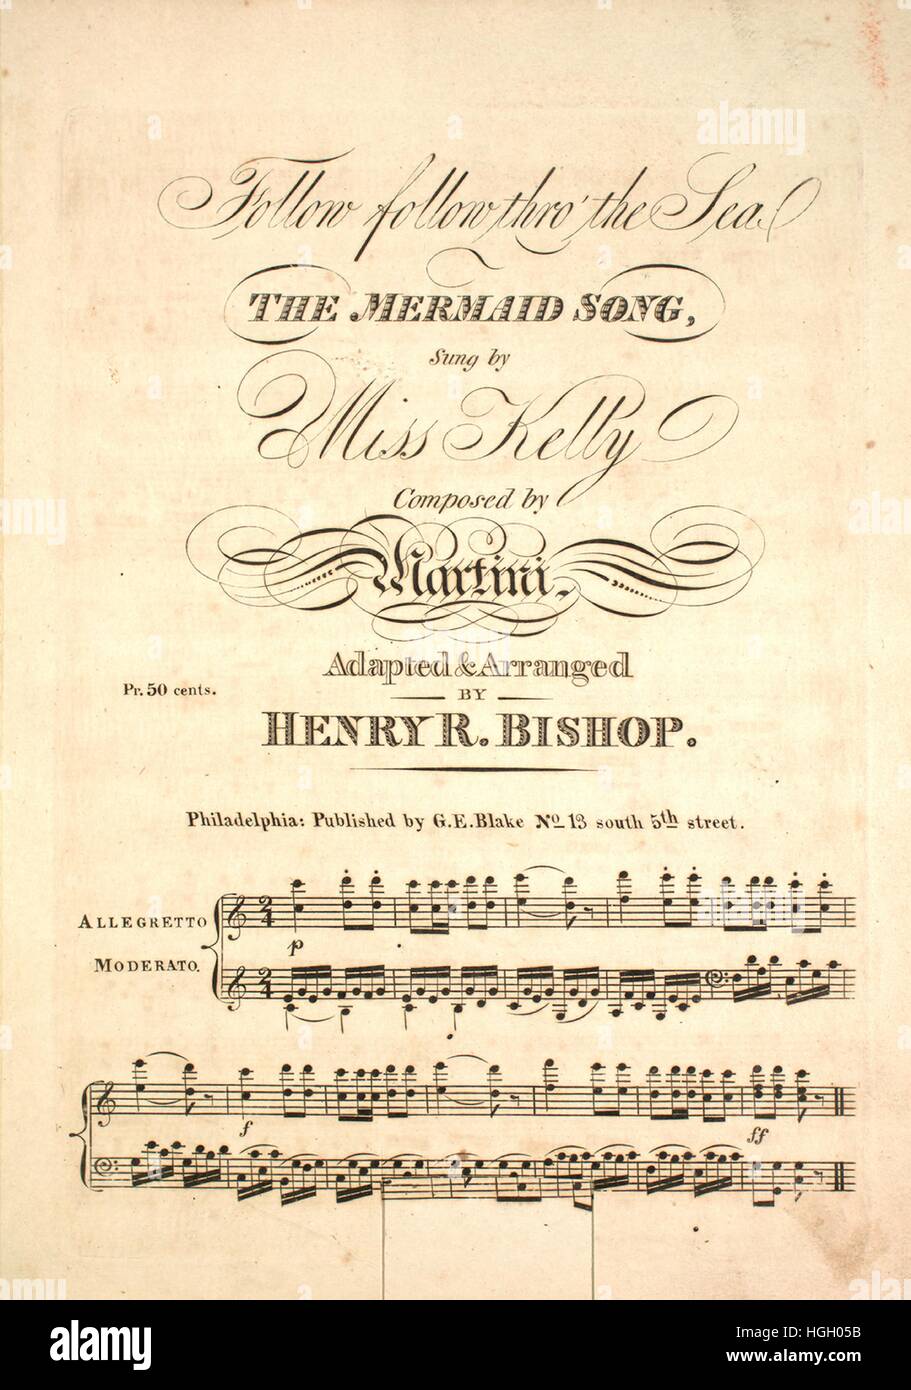 Imagen de cubierta de partituras de la canción "Siga pasante del Mar el  canto de sirena", con notas de autoría original leyendo 'compuesto por  Martini adaptadas y arregladas por Henry R Obispo",